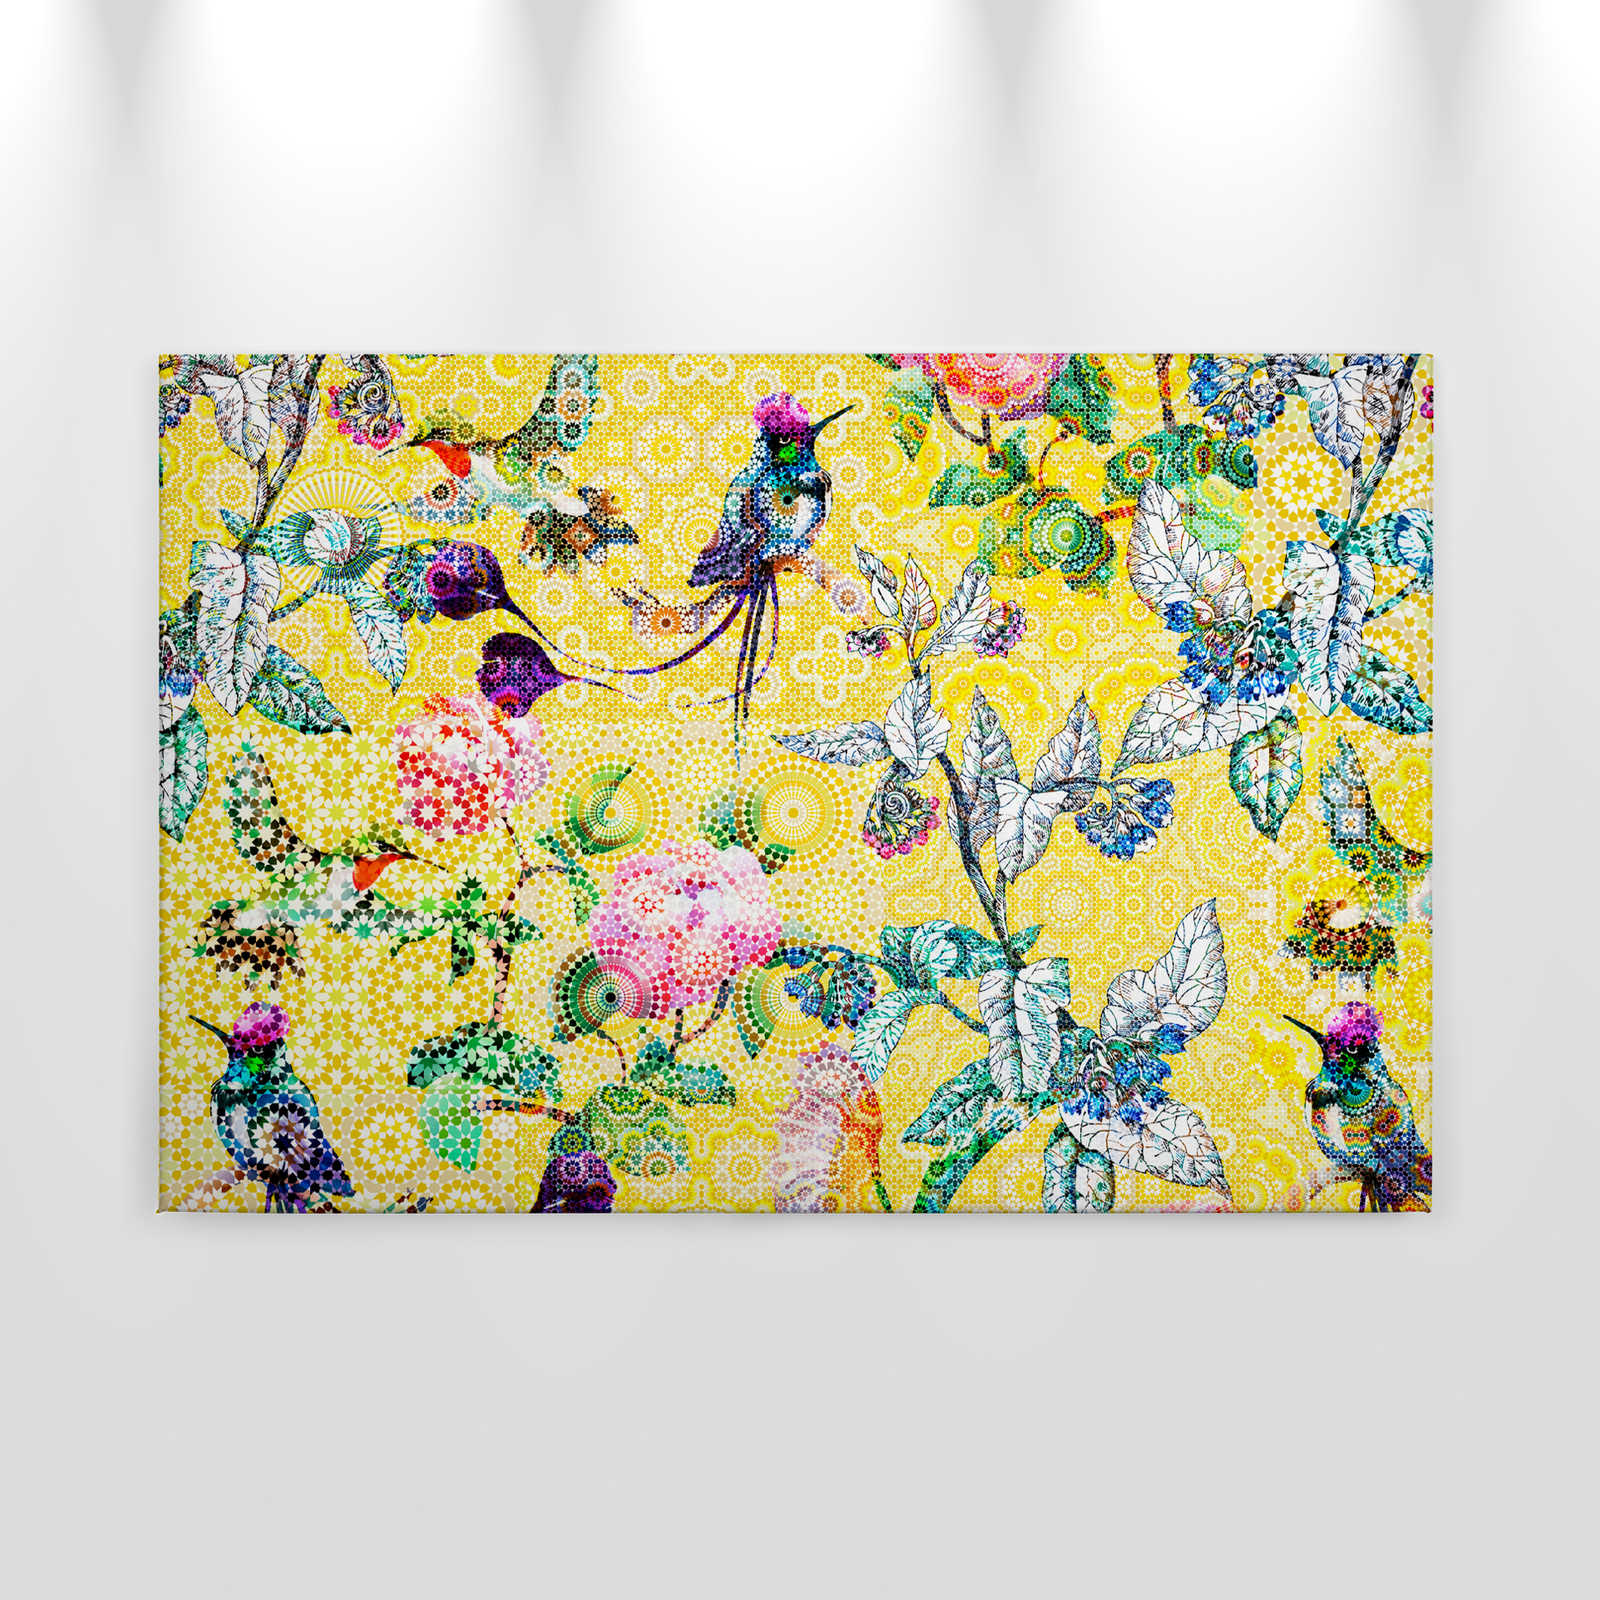             Cuadro mosaico flores exóticas - 0,90 m x 0,60 m
        